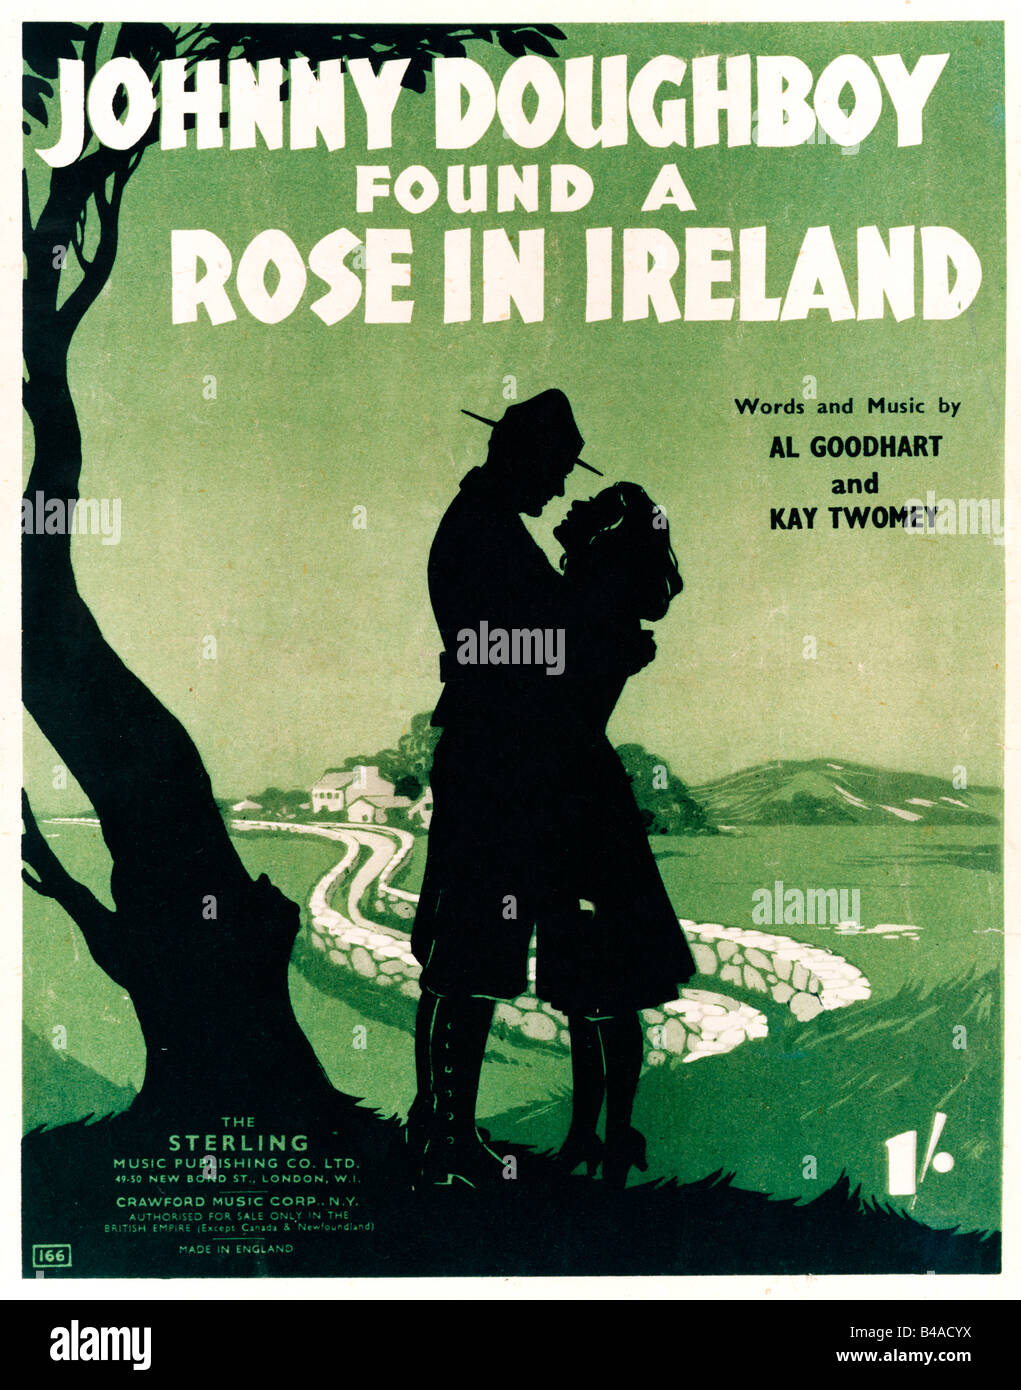 Johnny Doughboy trouvé une rose en Irlande 1919 feuille de musique pour couvrir une ballade au sujet de roman dans l'île d'Emeraude Banque D'Images